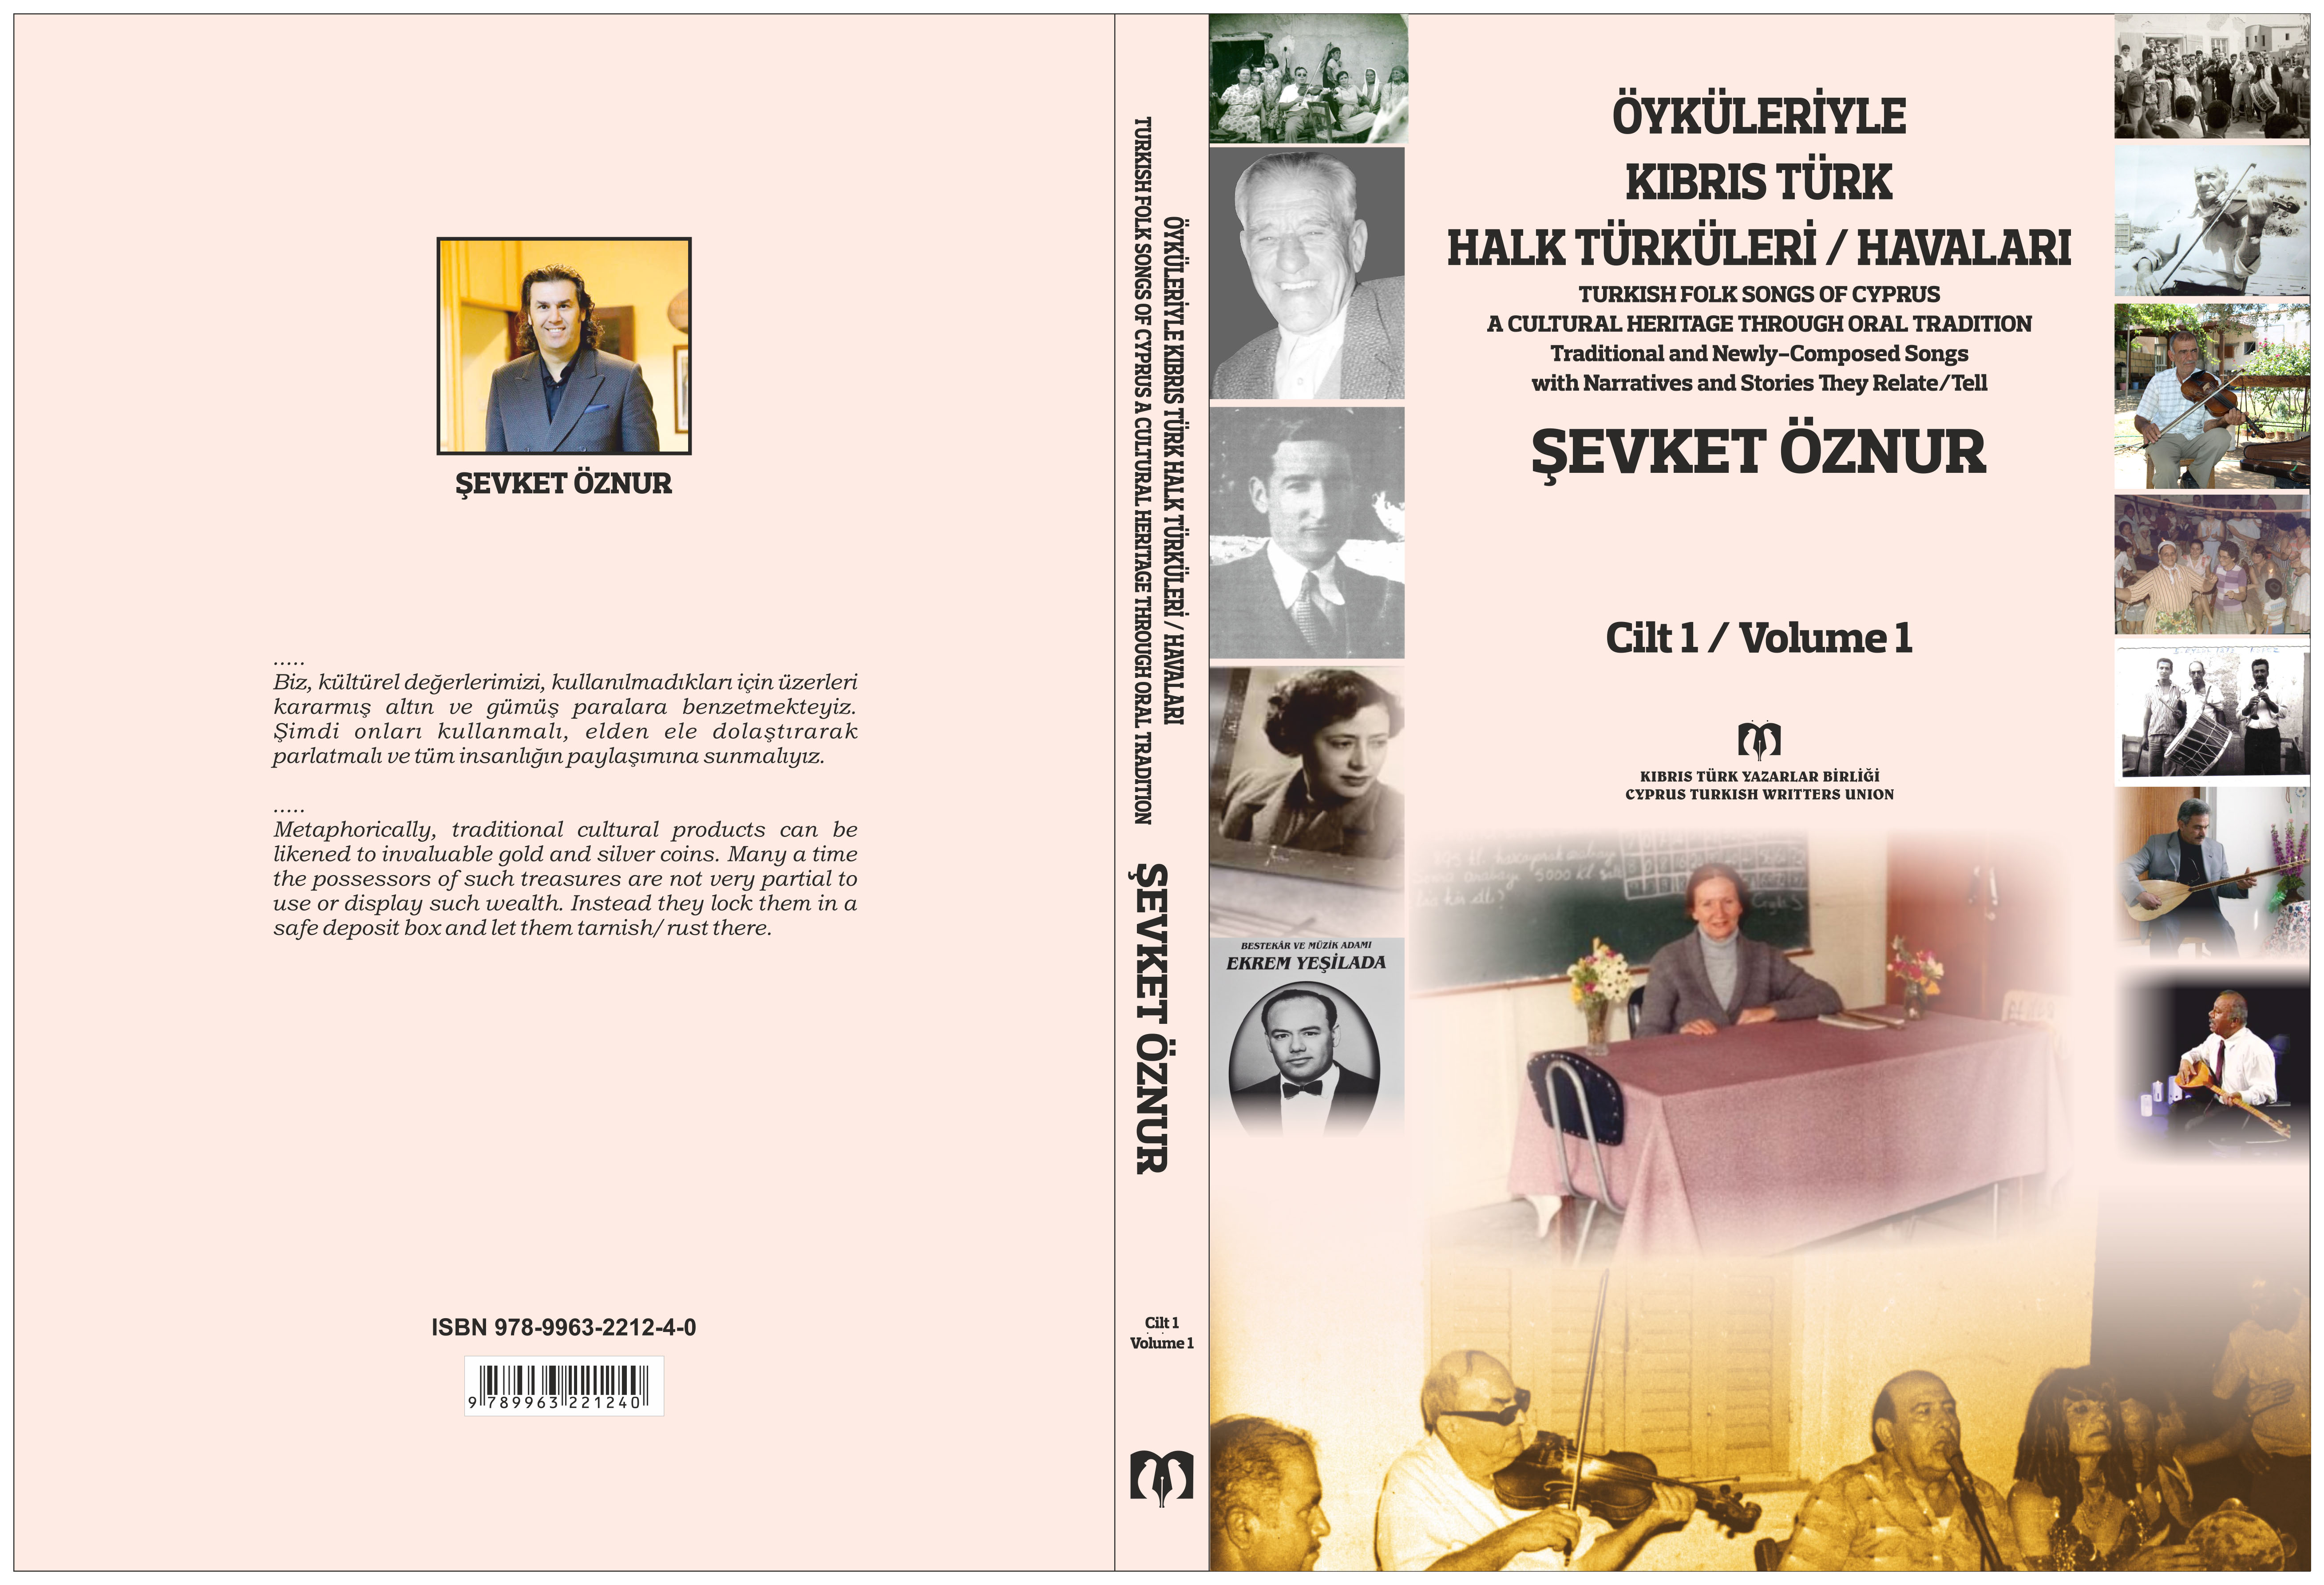 Yakın Doğu Üniversitesi Öğrt. Üy. Doç. Dr. Şevket ÖZNUR’un “Öyküleriyle Kıbrıs Türk Halk Türküleri/Havaları” </br>Cilt 1 Kitabı Çıktı